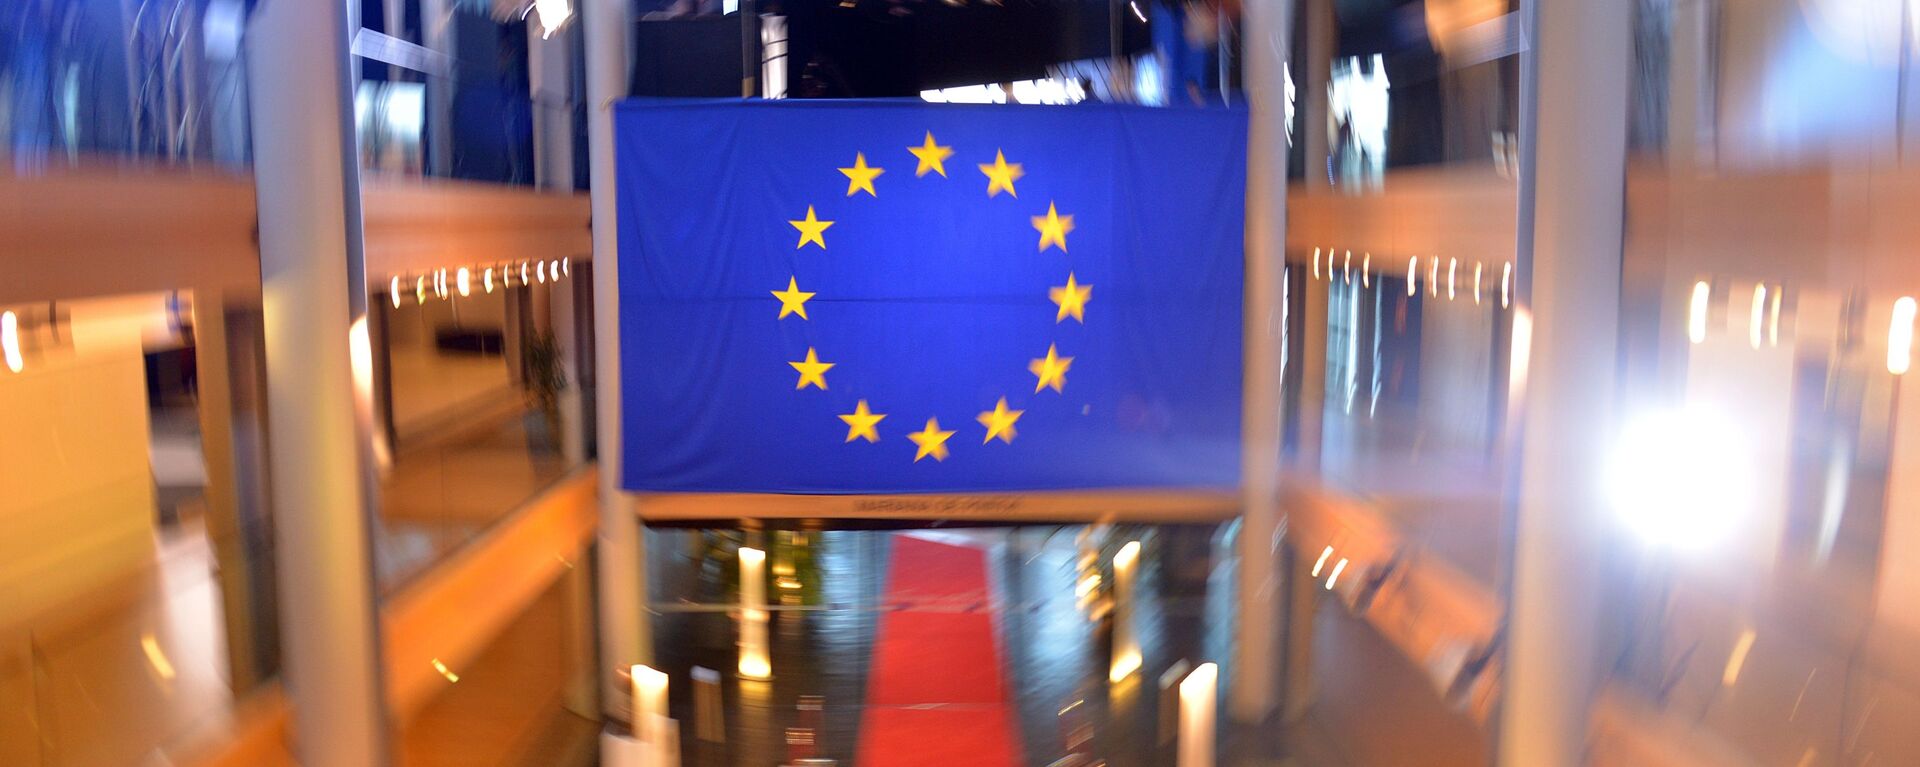 Флаг Евросоюза в главном здании Совета Европы в Страсбурге - Sputnik Латвия, 1920, 04.03.2021